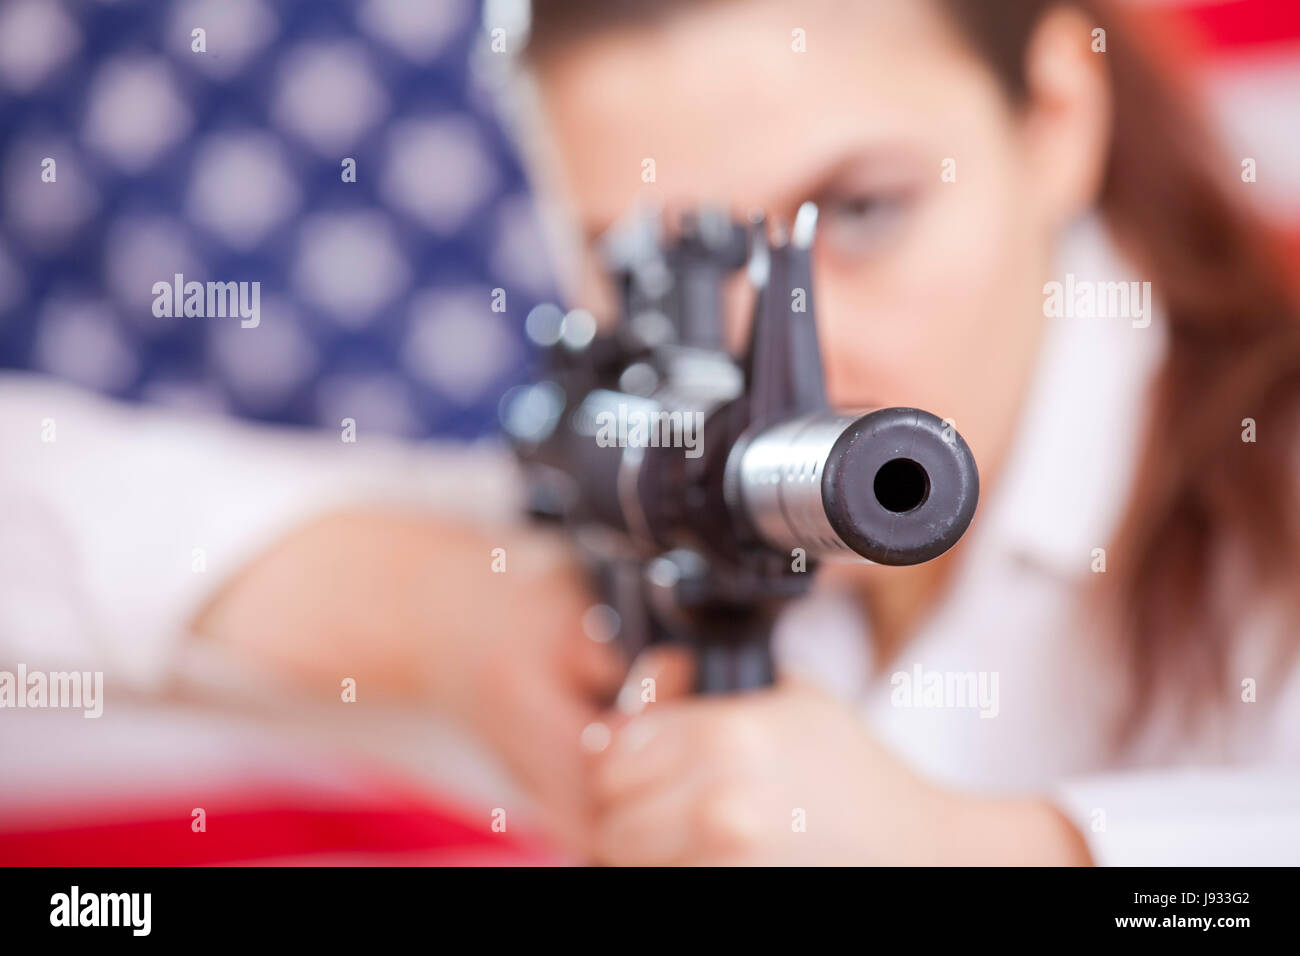 Femme, américain, le tir, le canon, arme à feu, arme à feu, agressif, agressif, robot, Banque D'Images